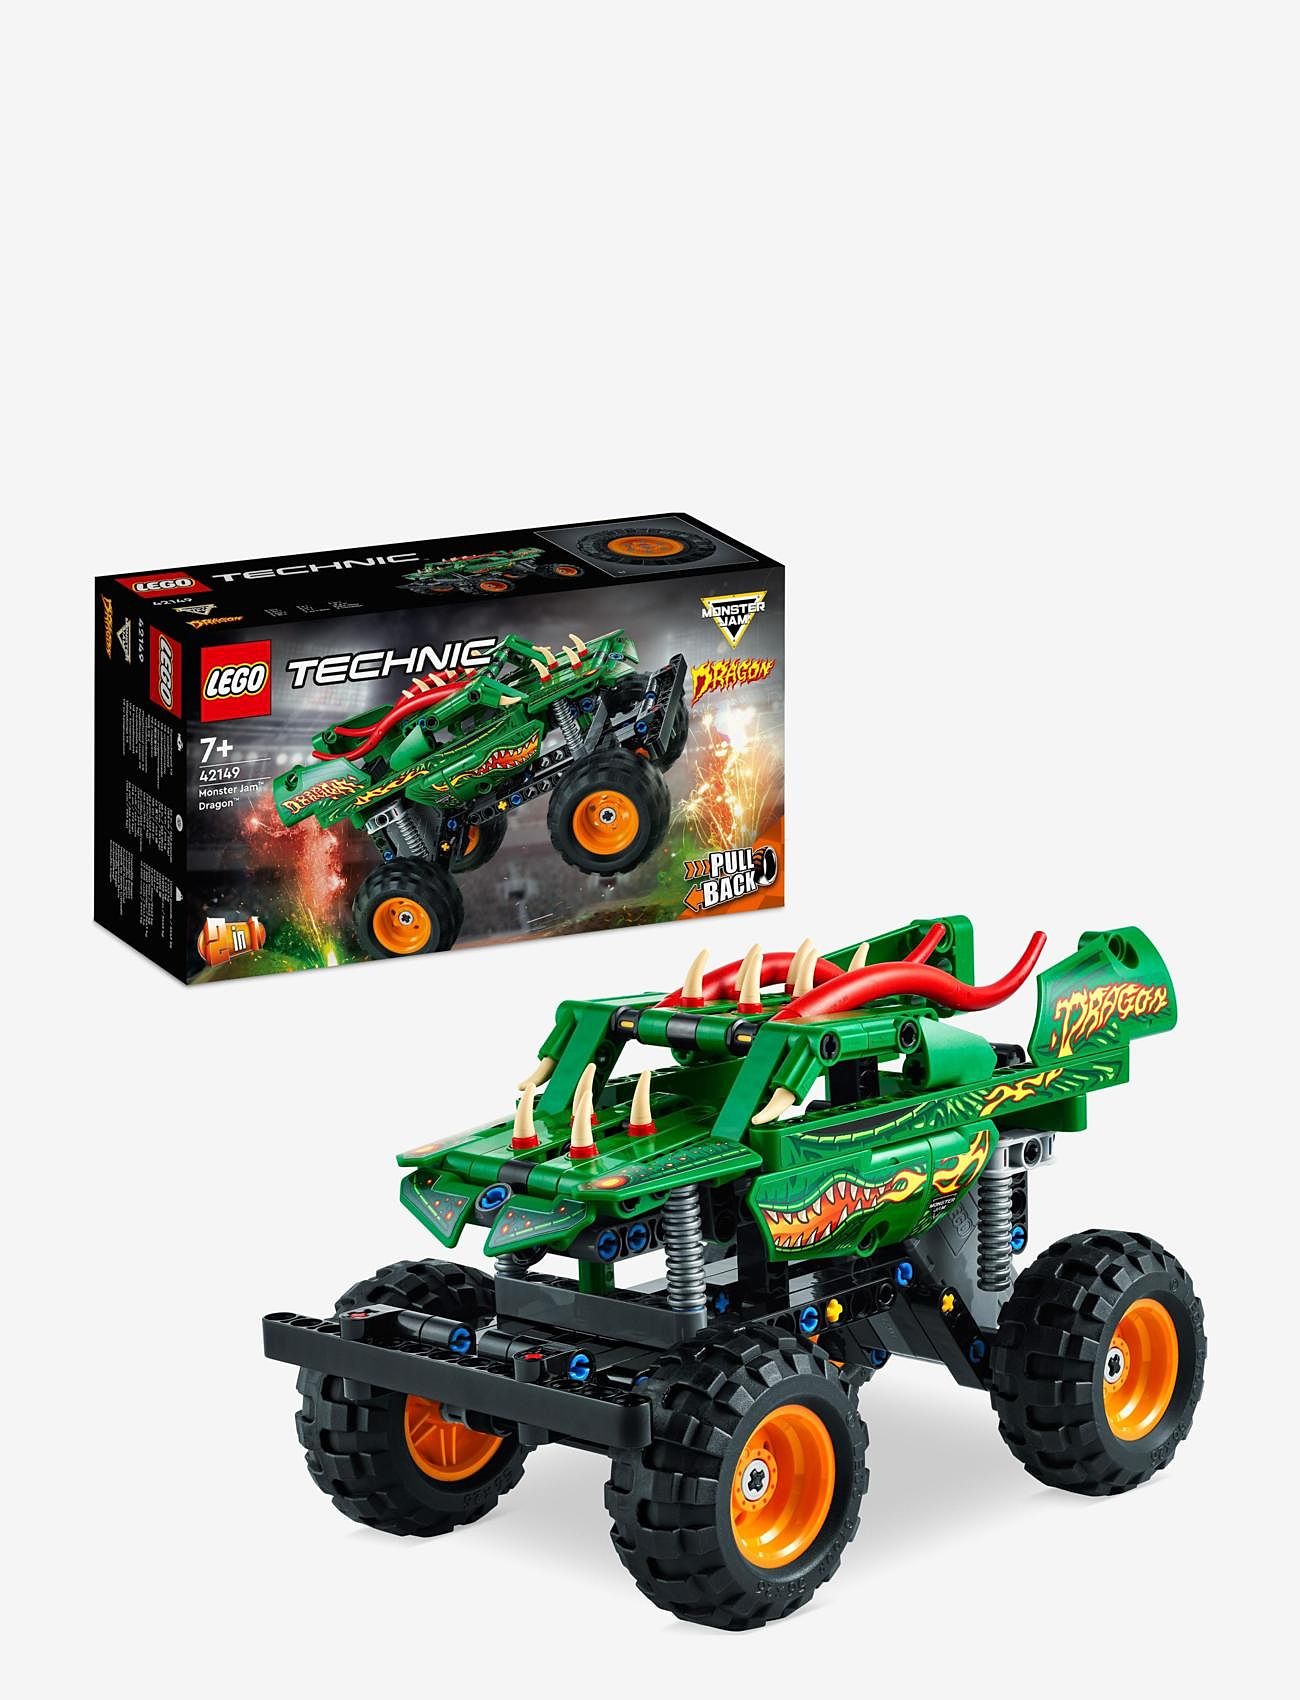 LEGO - Monster Jam Dragon 2in1 Monster Truck Toy - lego® technic - multicolor - 0